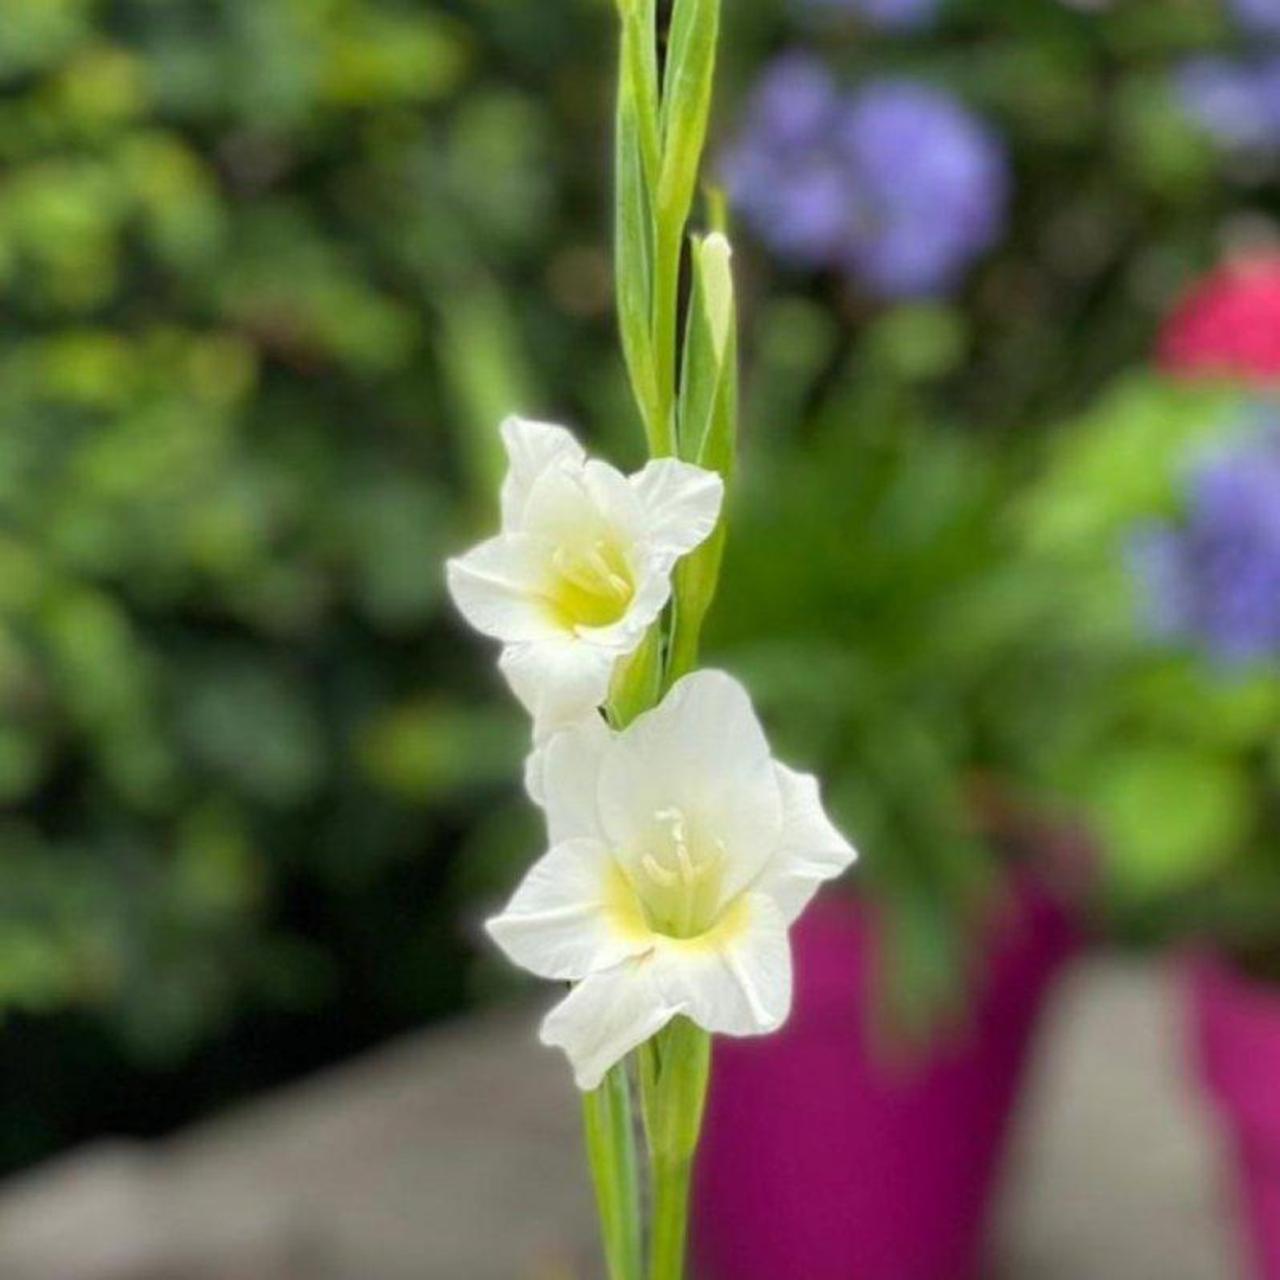 Gladiolus nanus 'Summer Bride' plant